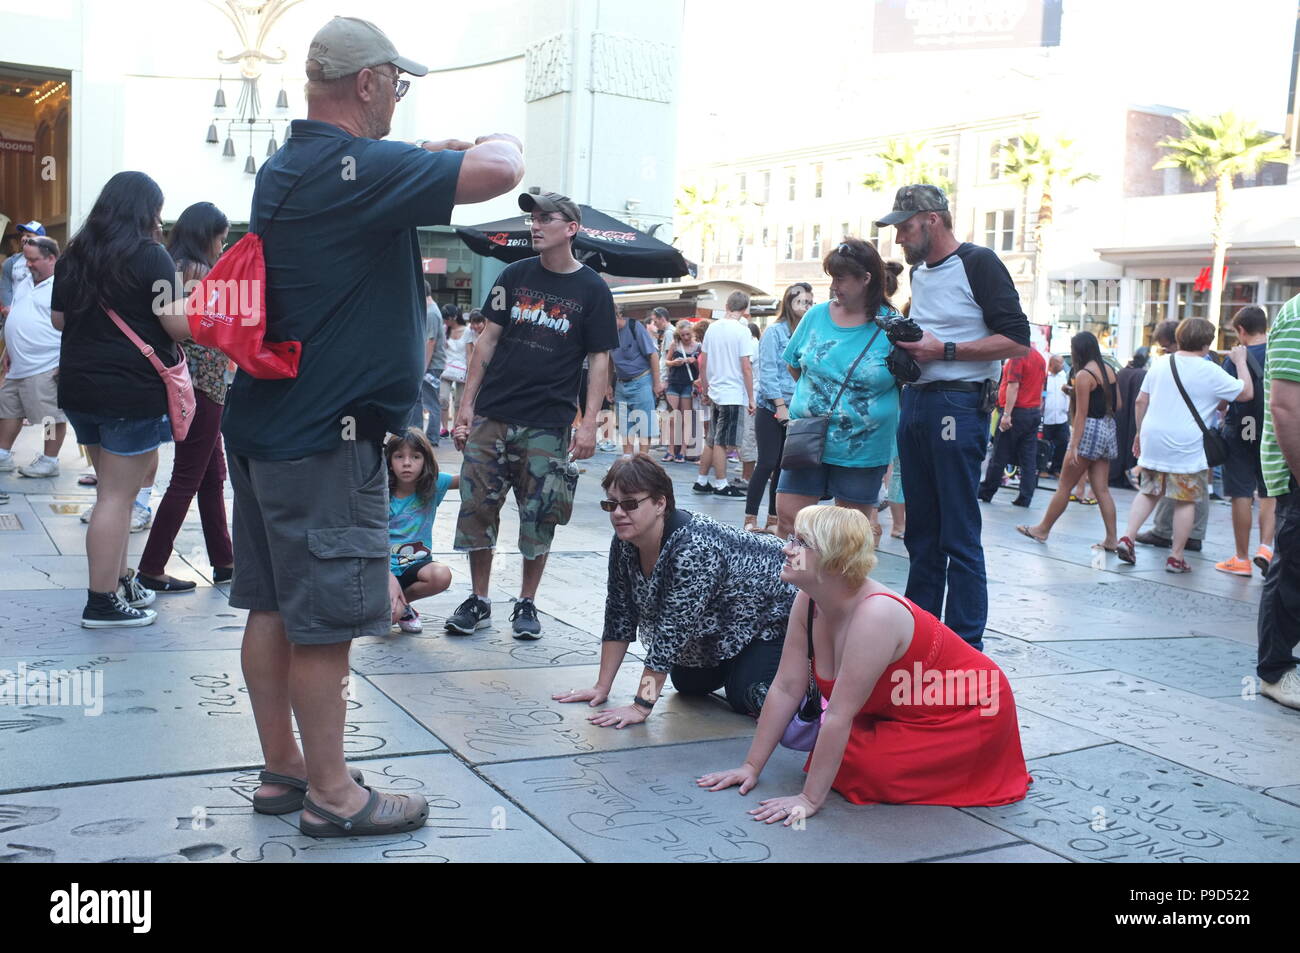 Los Angeles, USA - 29. Juli: Nicht identifizierte zufällige Menschen in den Straßen der Innenstadt von Los Angeles, CA am 29. Juli 2018. Stockfoto